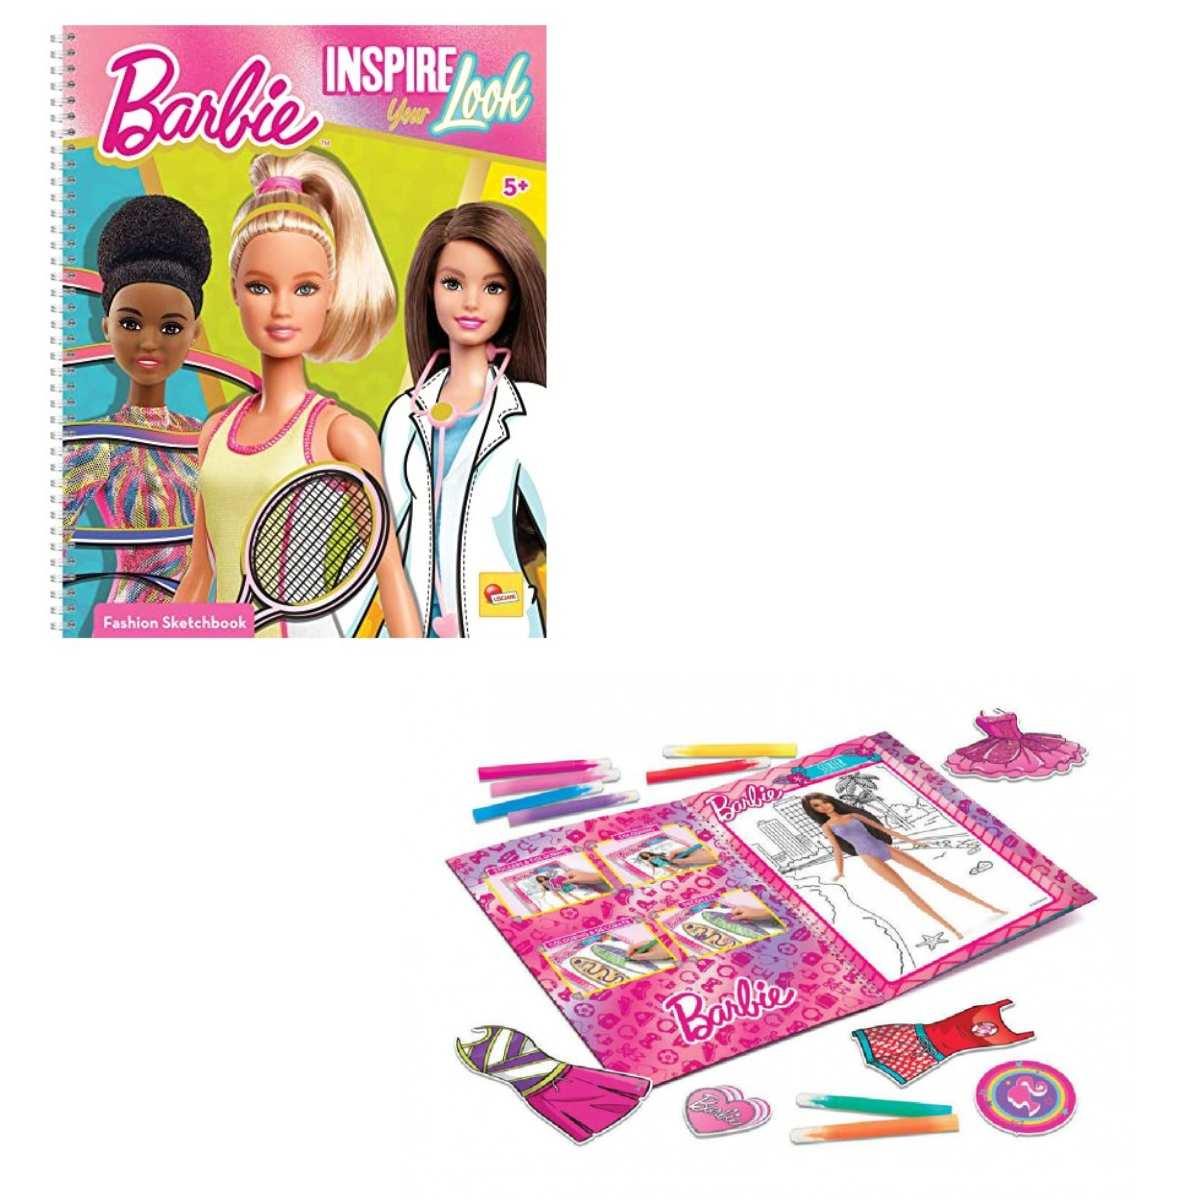 Barbie sketchbook inspire your look